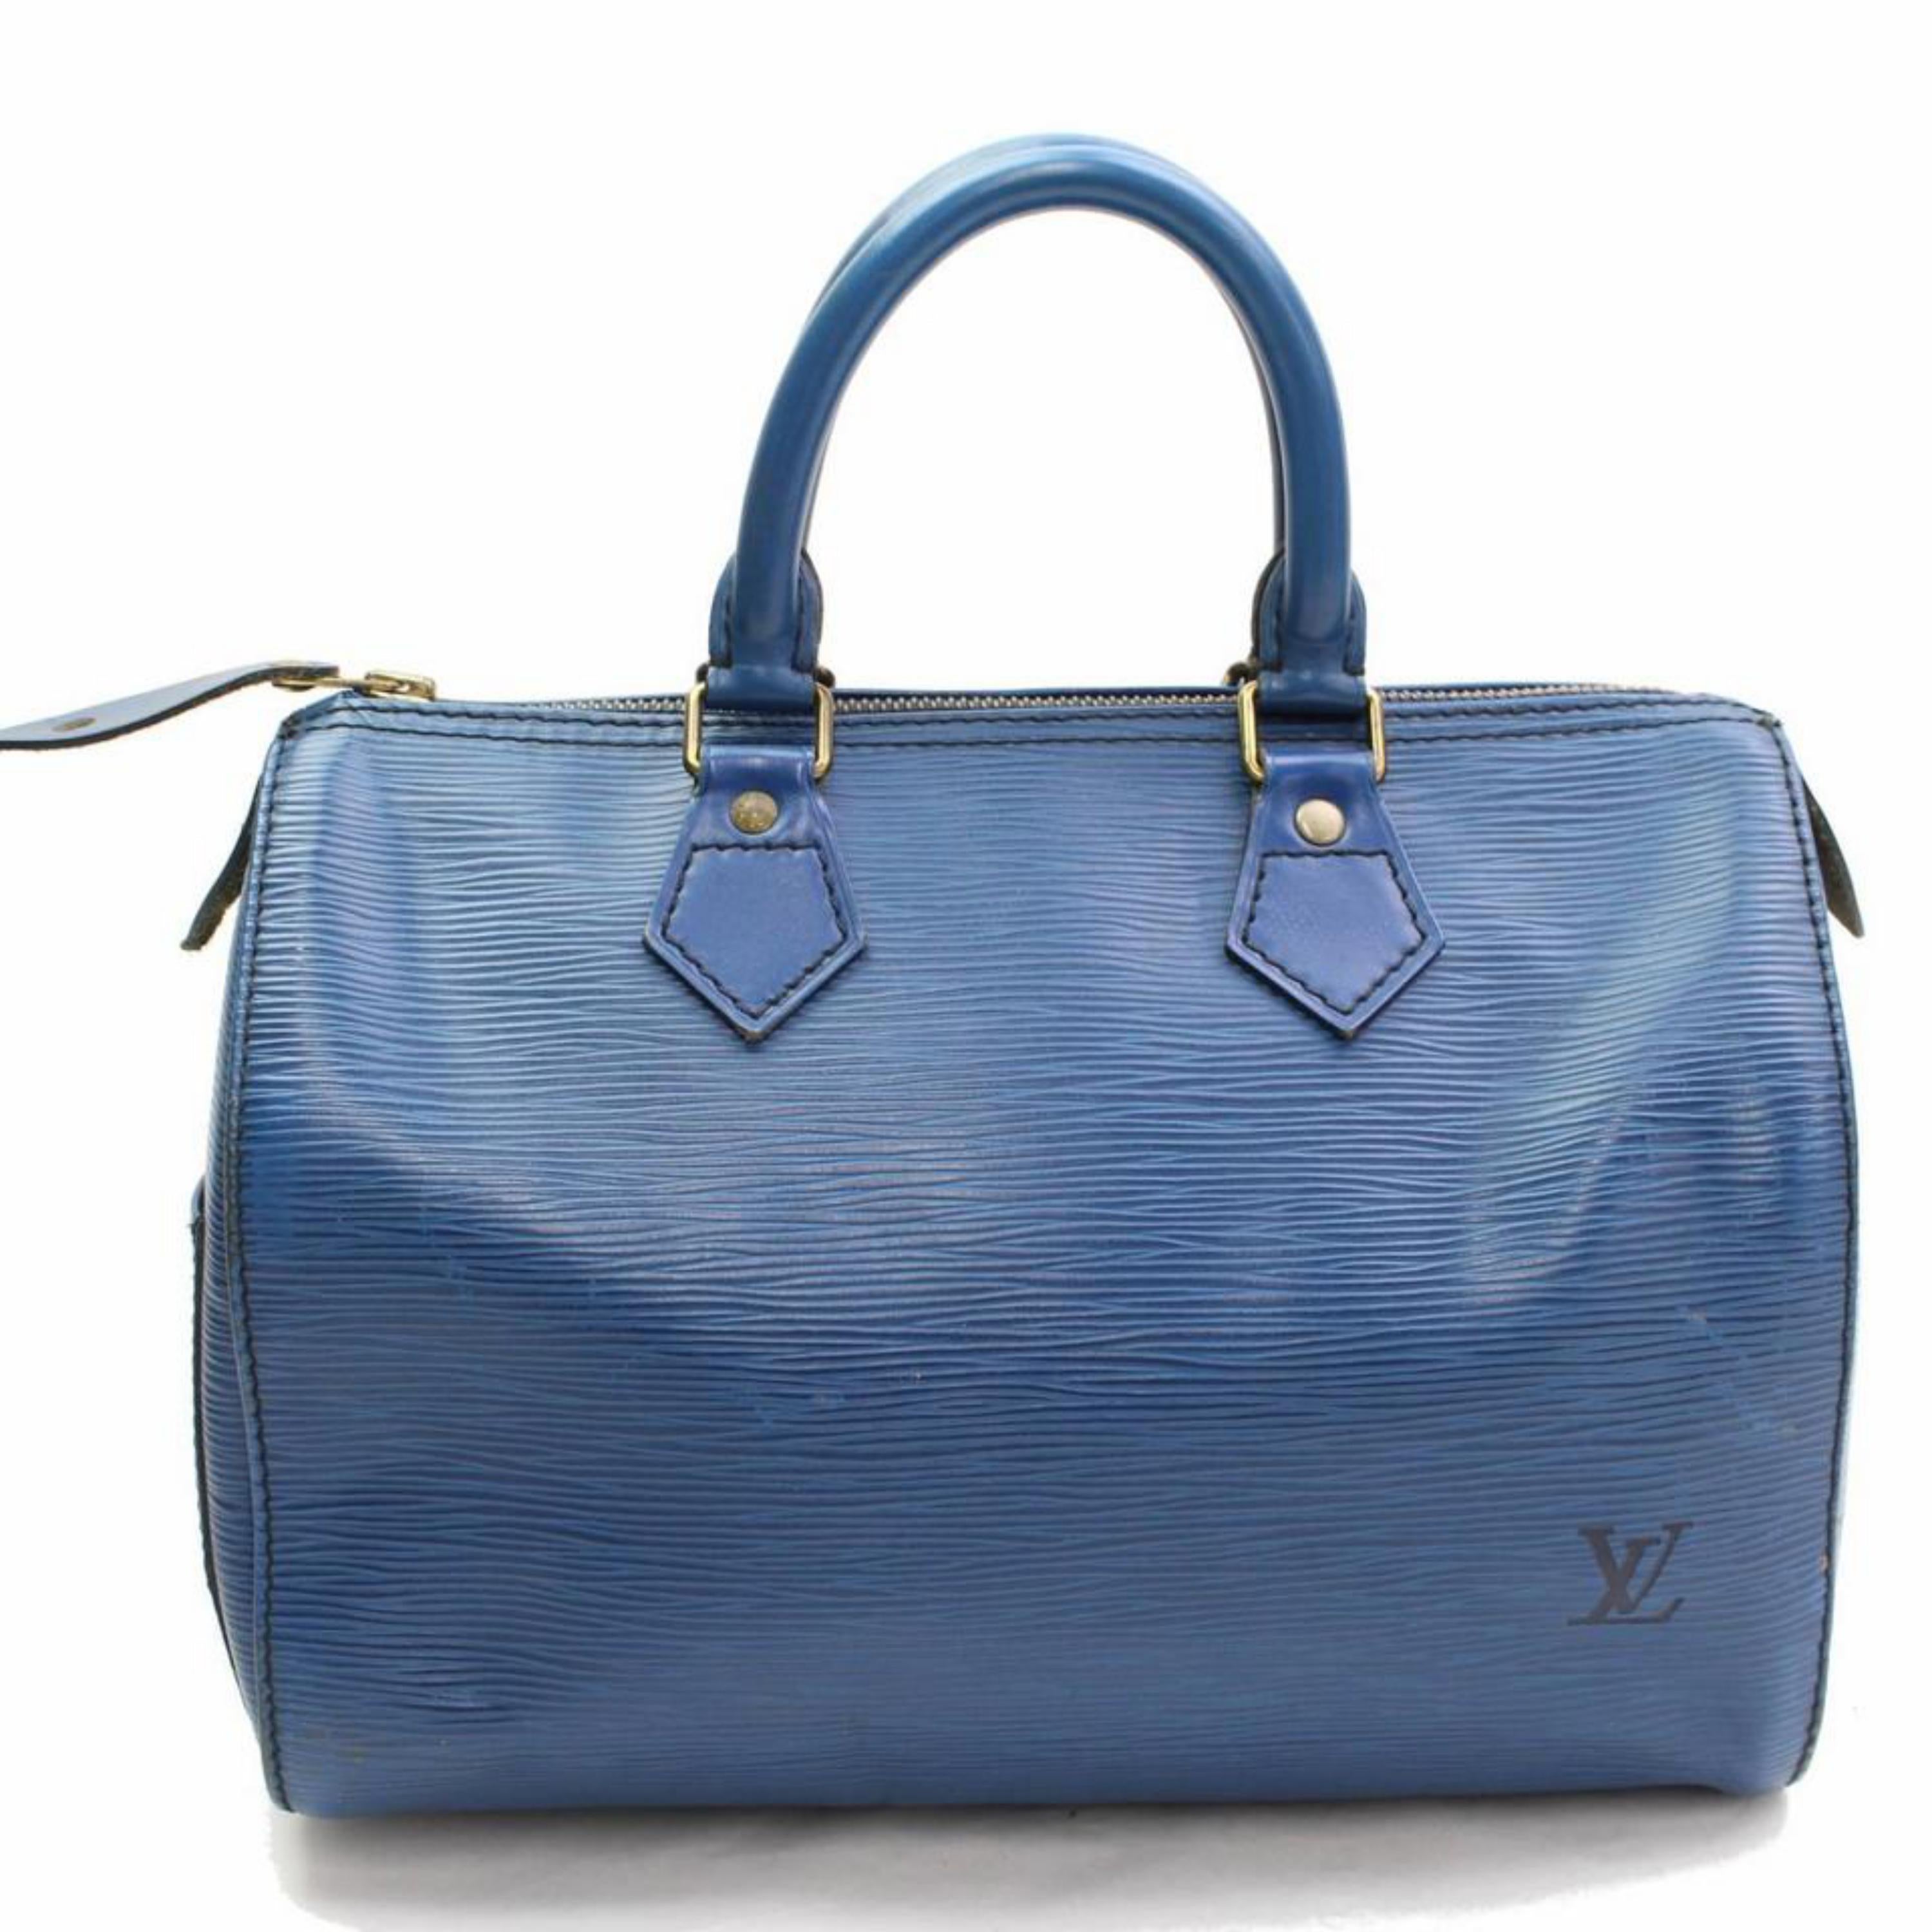 Louis Vuitton Speedy Epi 25 868003 Blue Leather Satchel For Sale 2